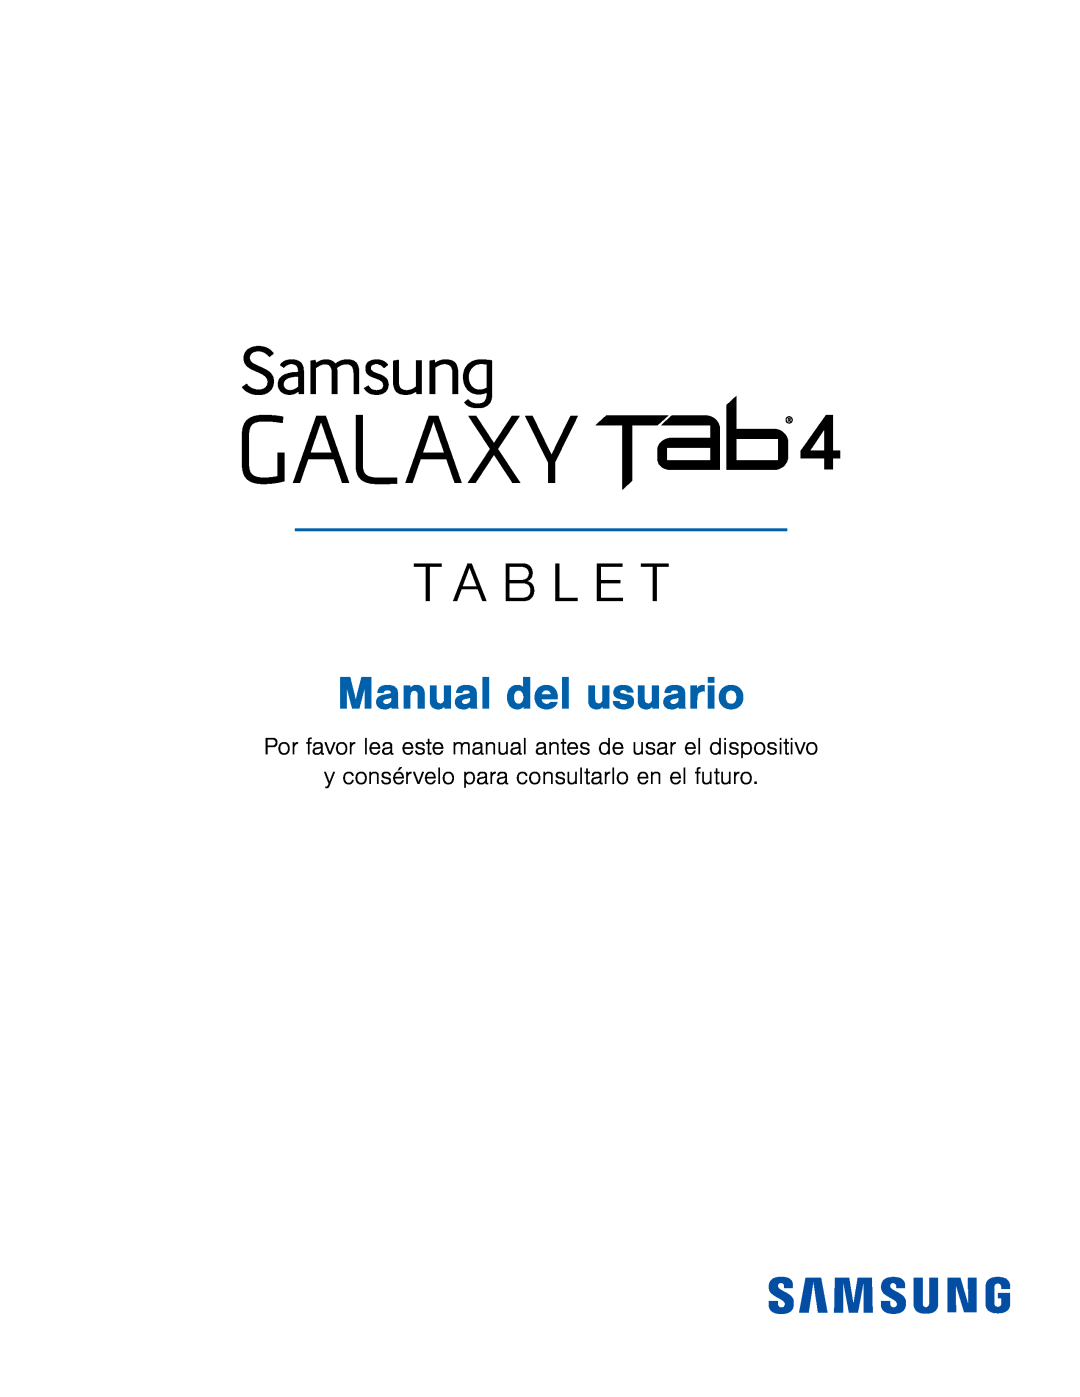 y consérvelo para consultarlo en el futuro Galaxy Tab 4 8.0 T-Mobile